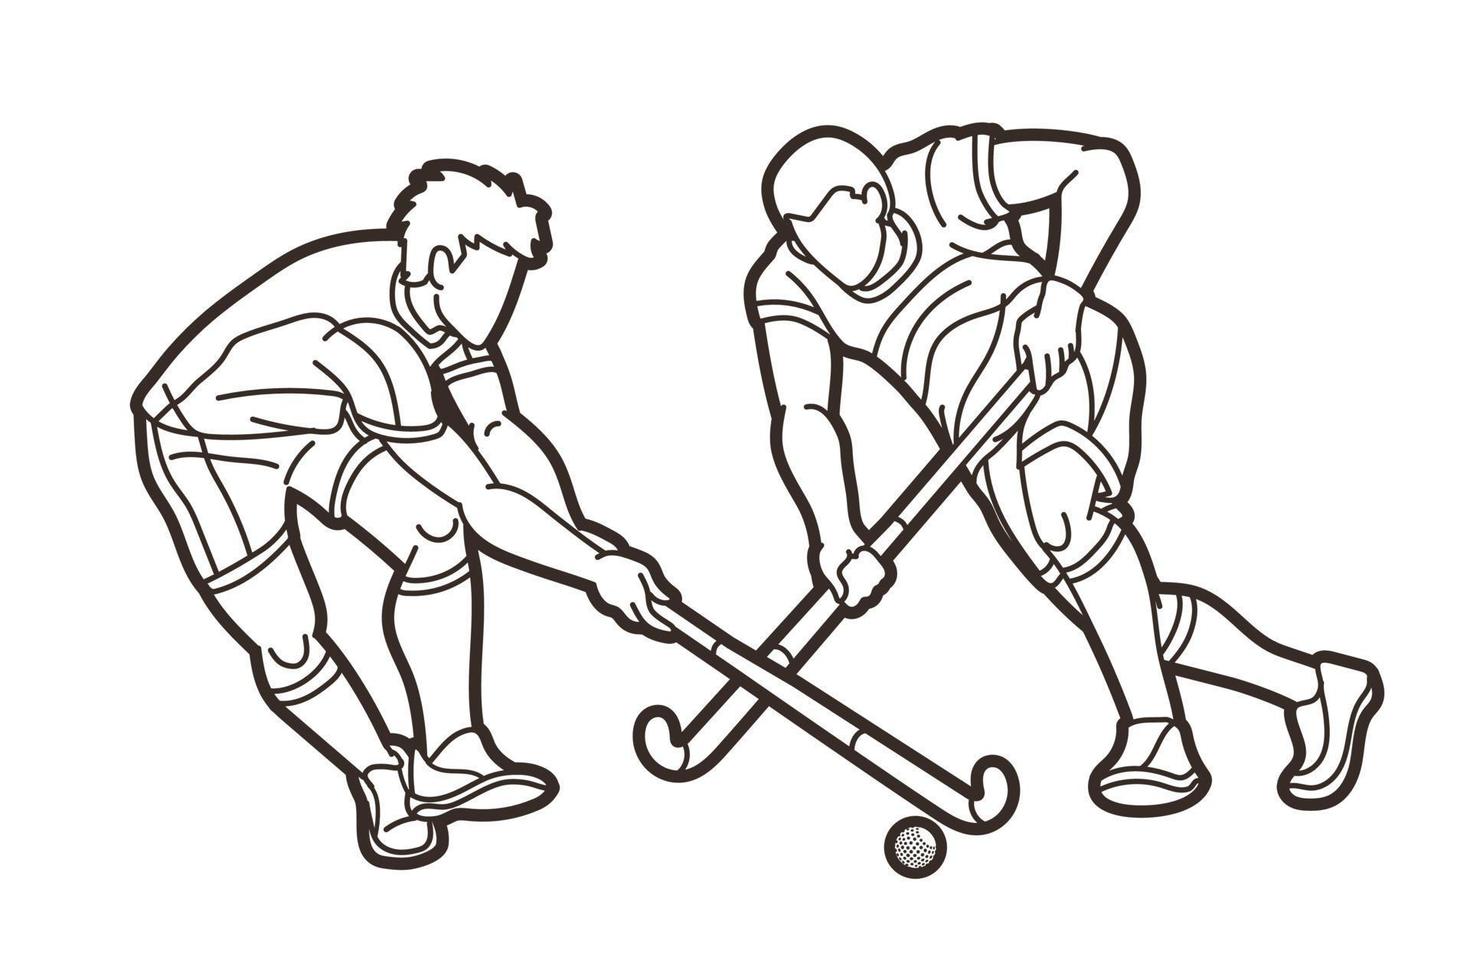 Esbozar jugadores masculinos de deporte de hockey sobre césped vector